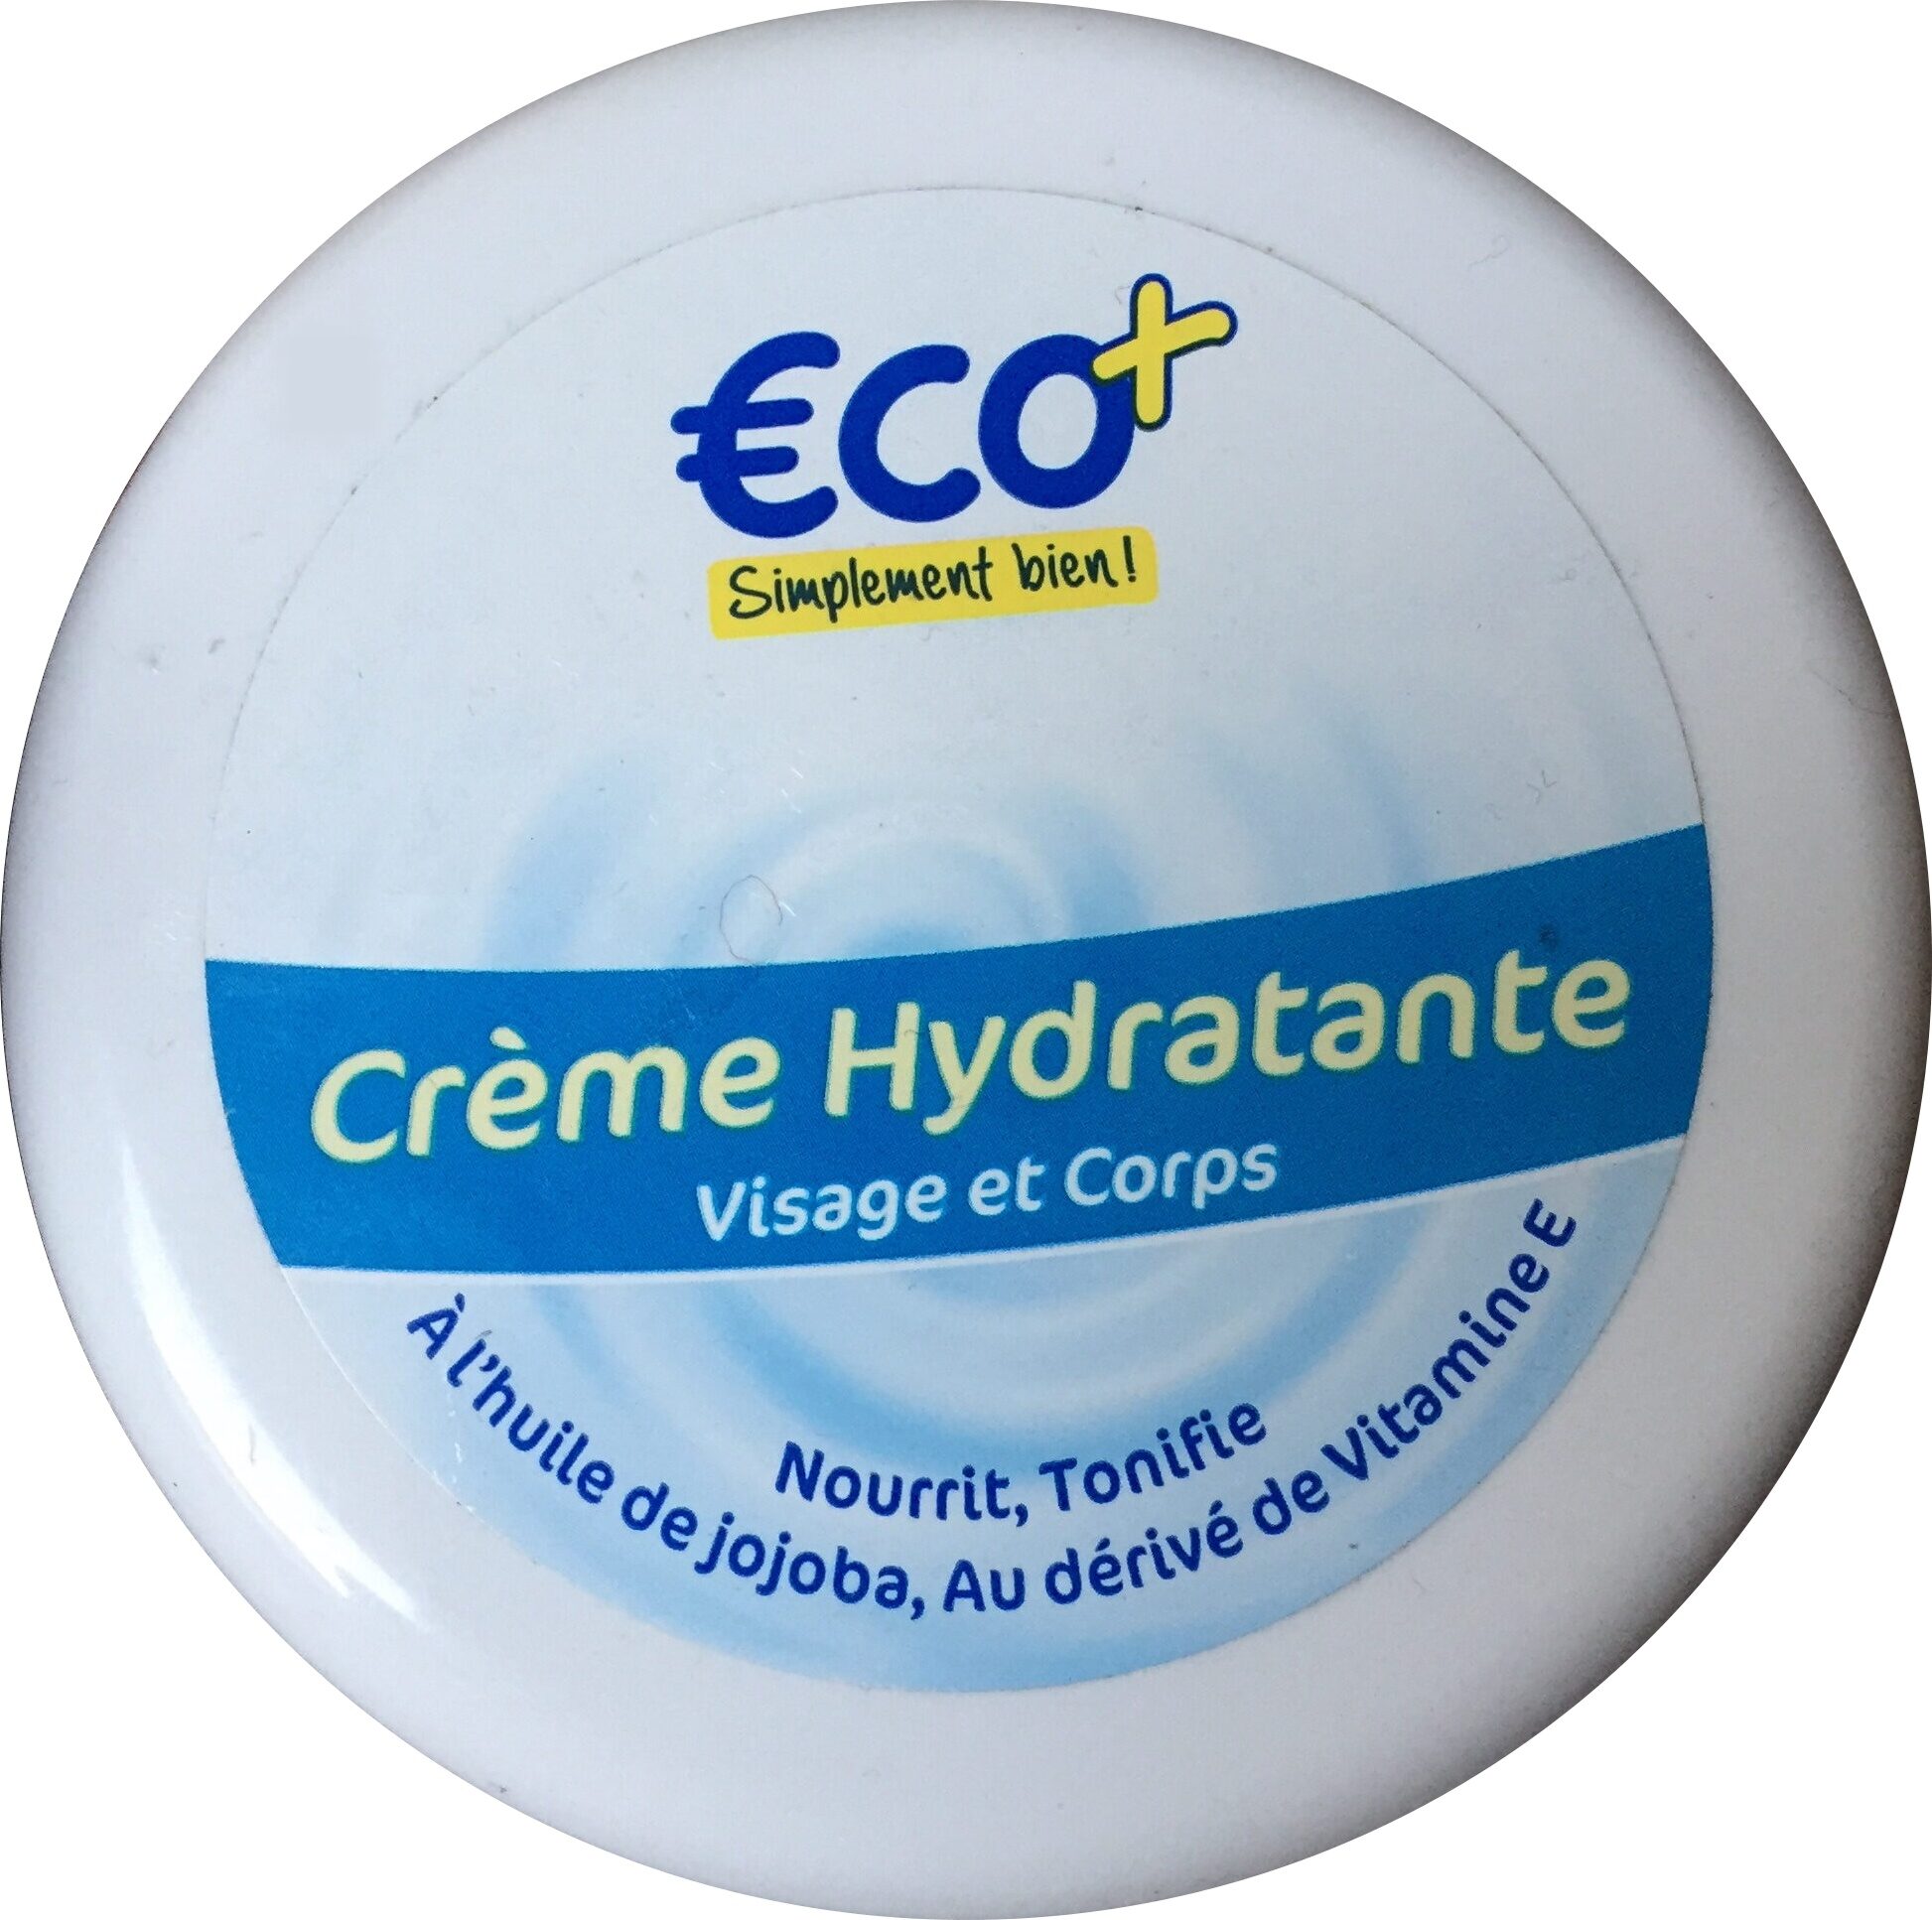 Crème hydratante visage et corps - Product - en